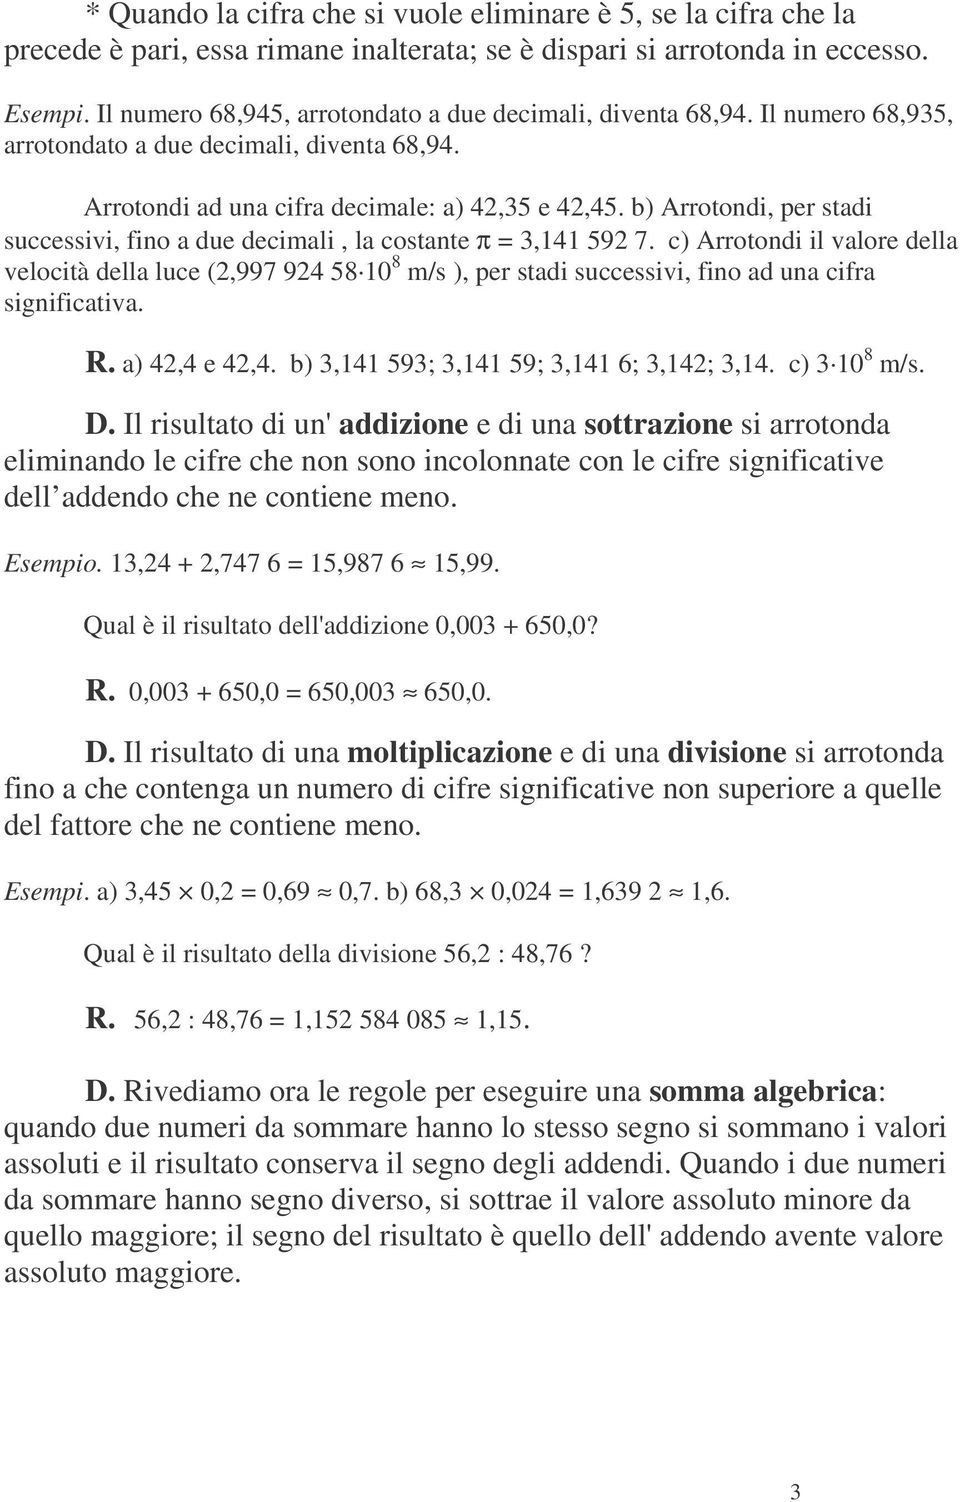 b) Arrotondi, per stadi successivi, fino a due decimali, la costante π = 3,141 592 7.